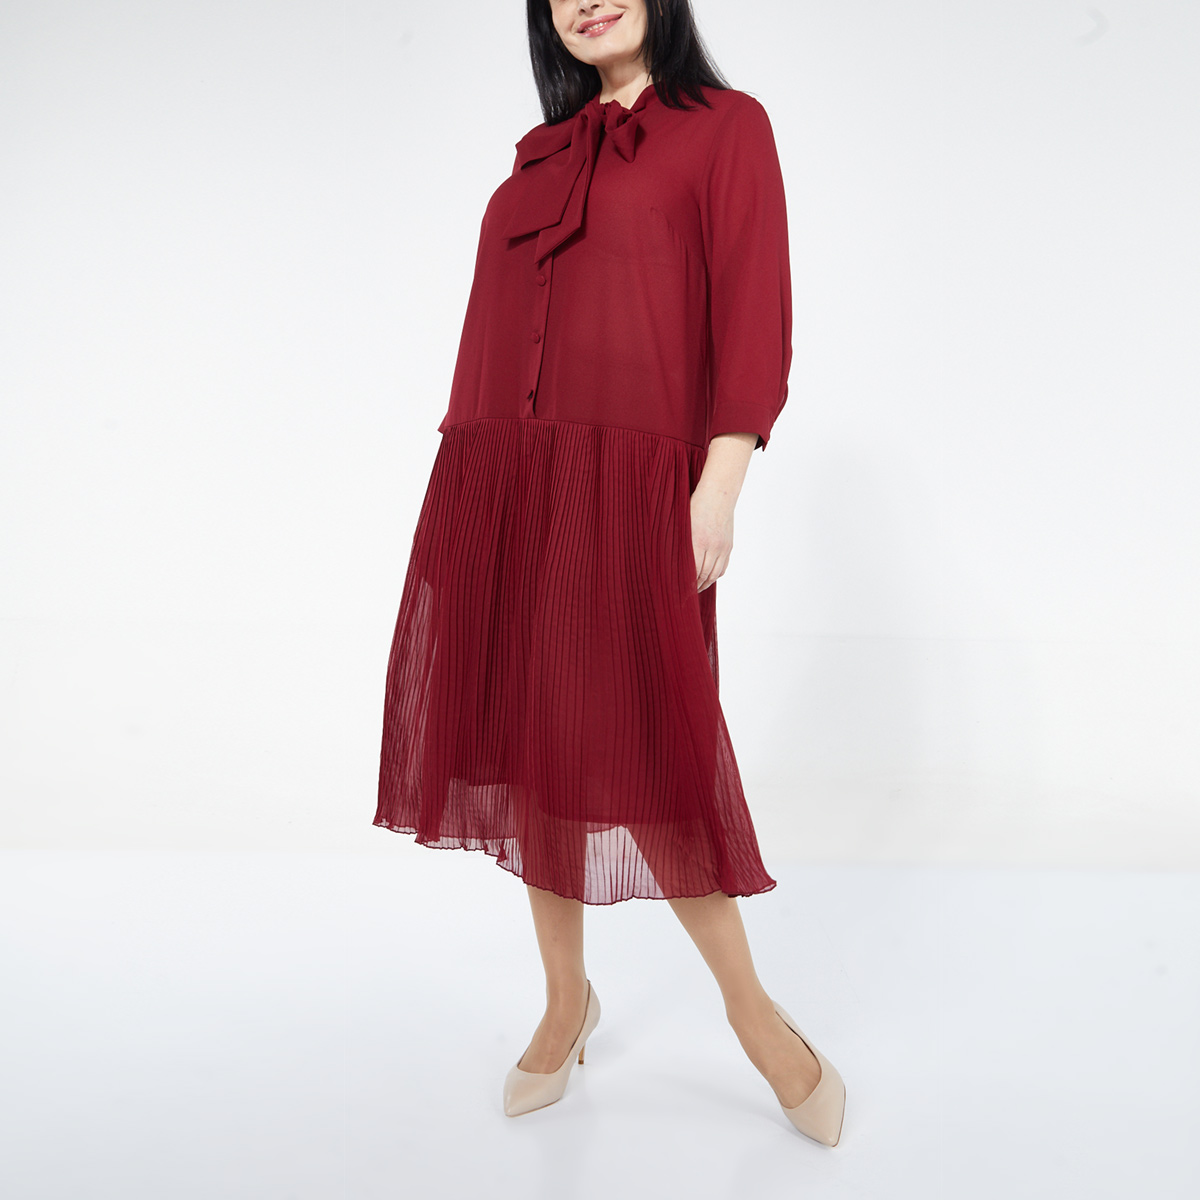 Платье, текстиль, бордовый